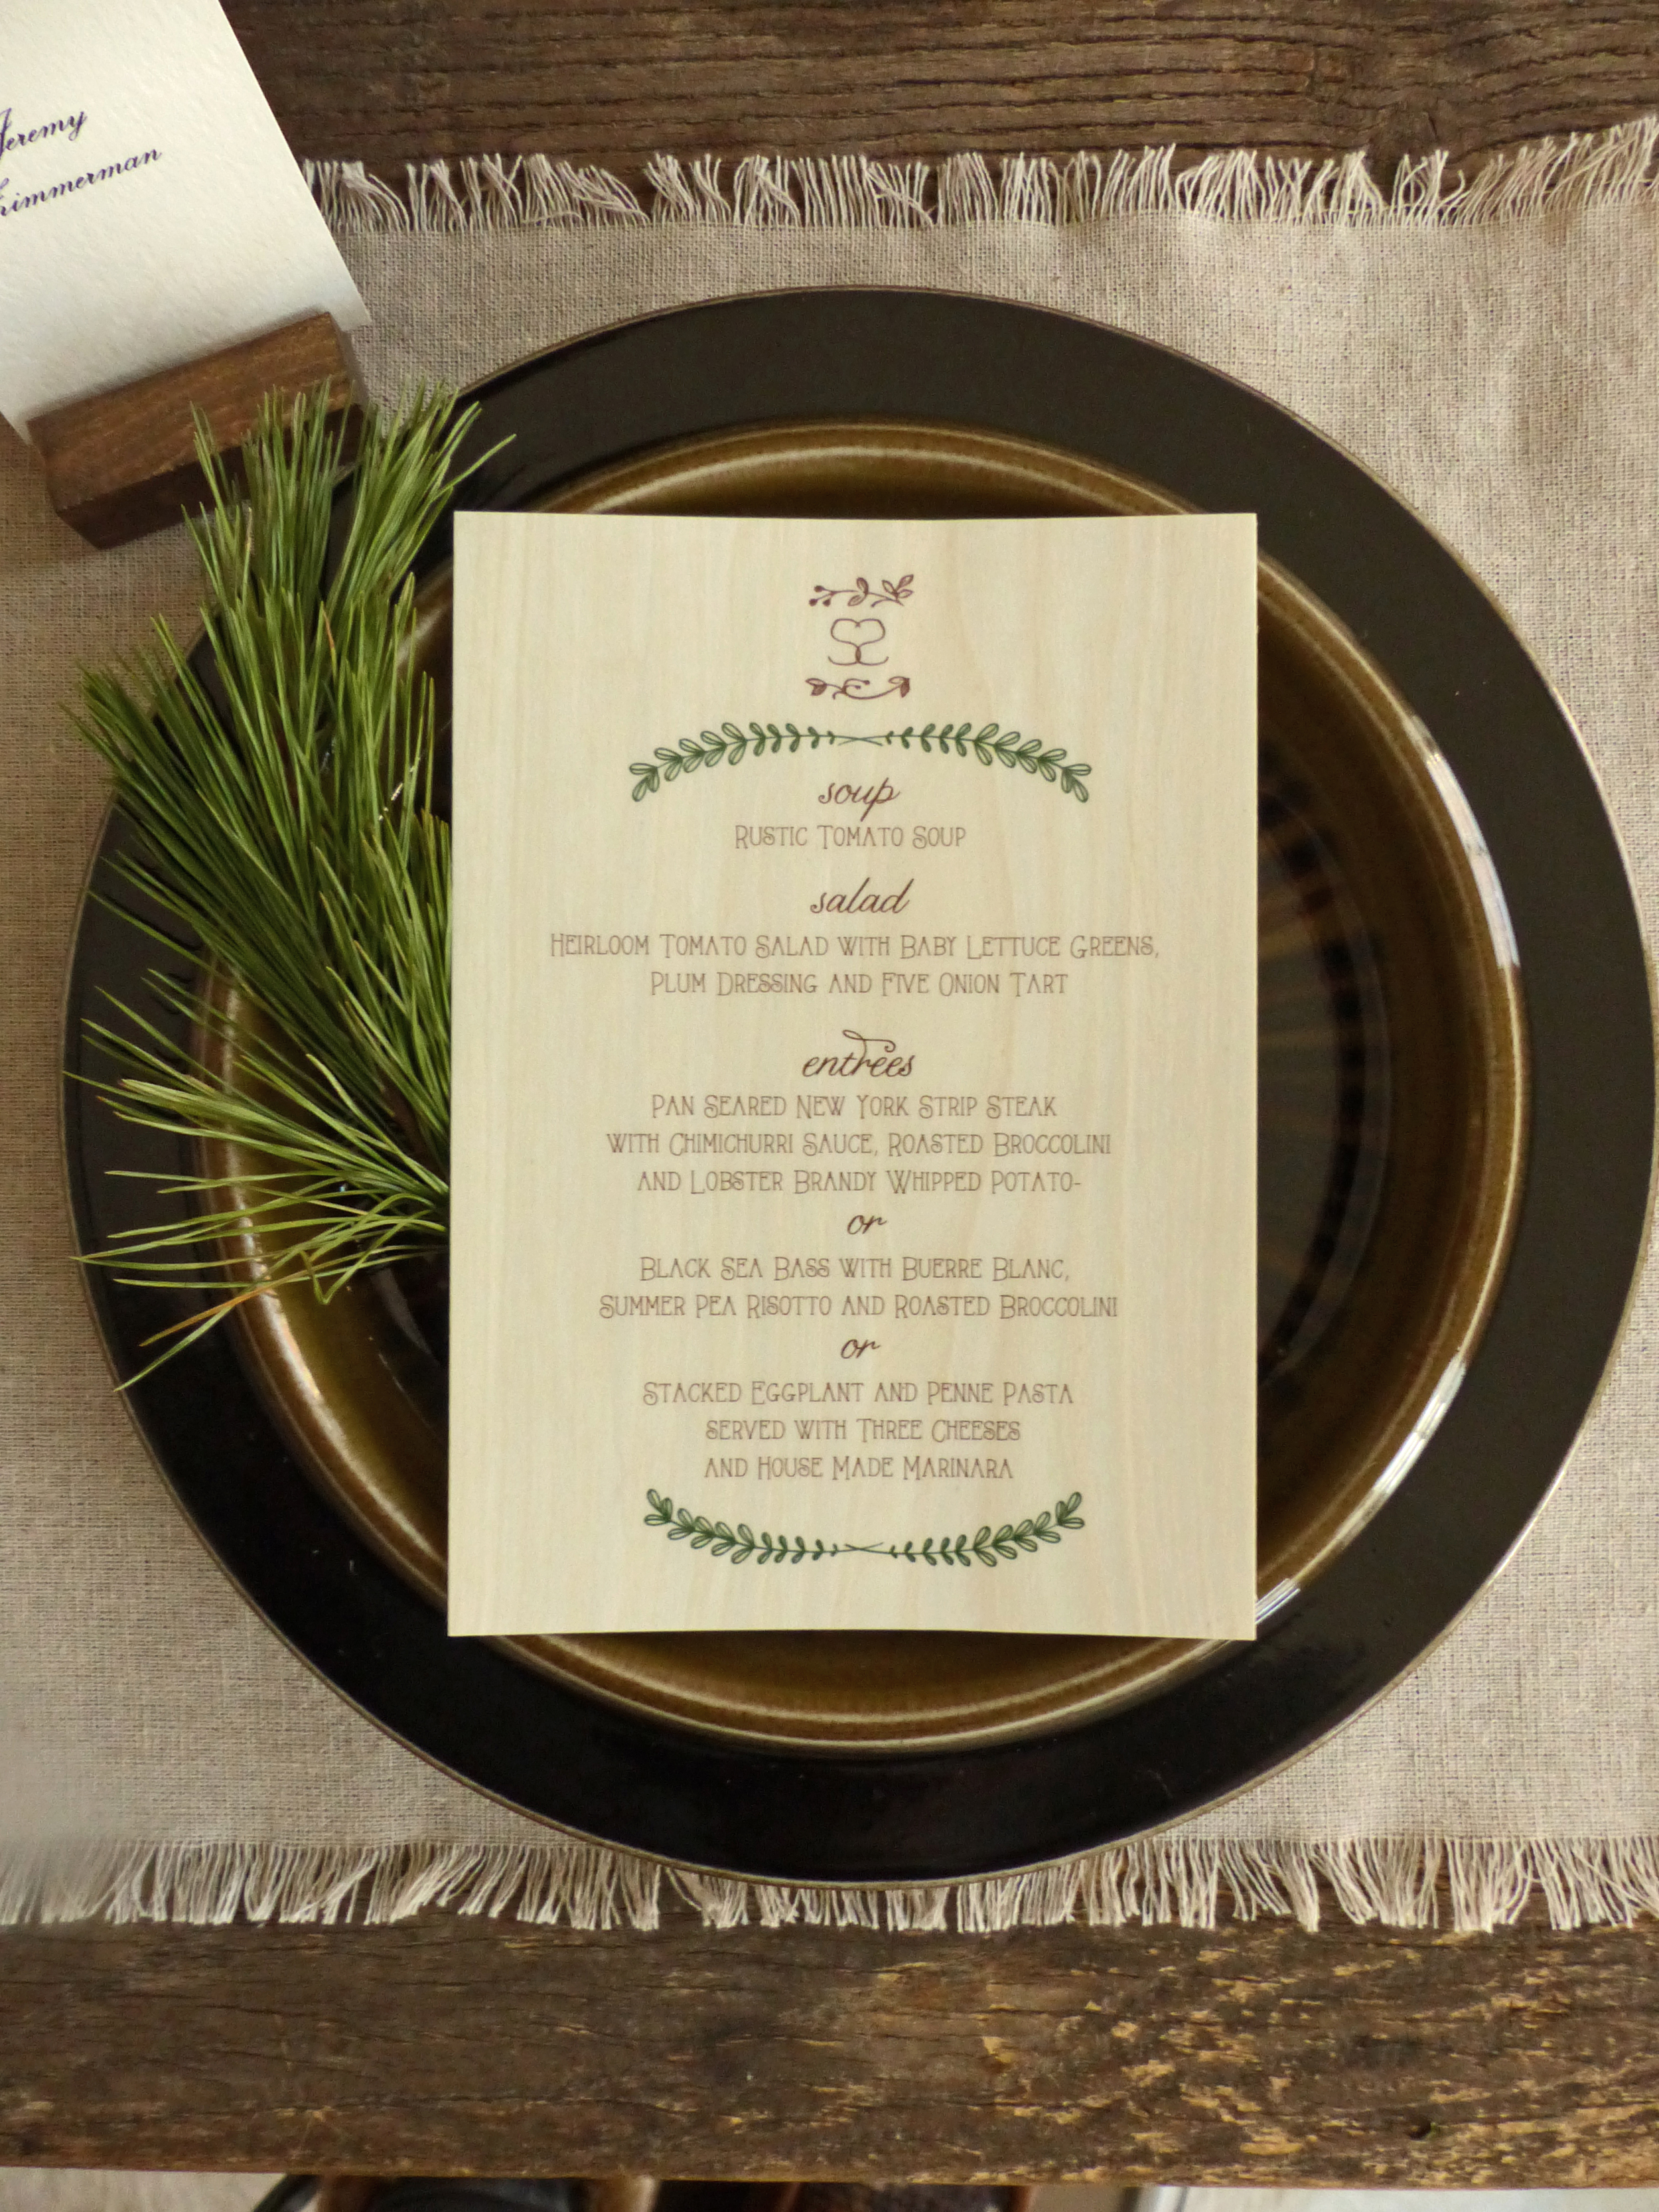  The dinner menu, like the invitation, was printed on aspen wood veneer. 